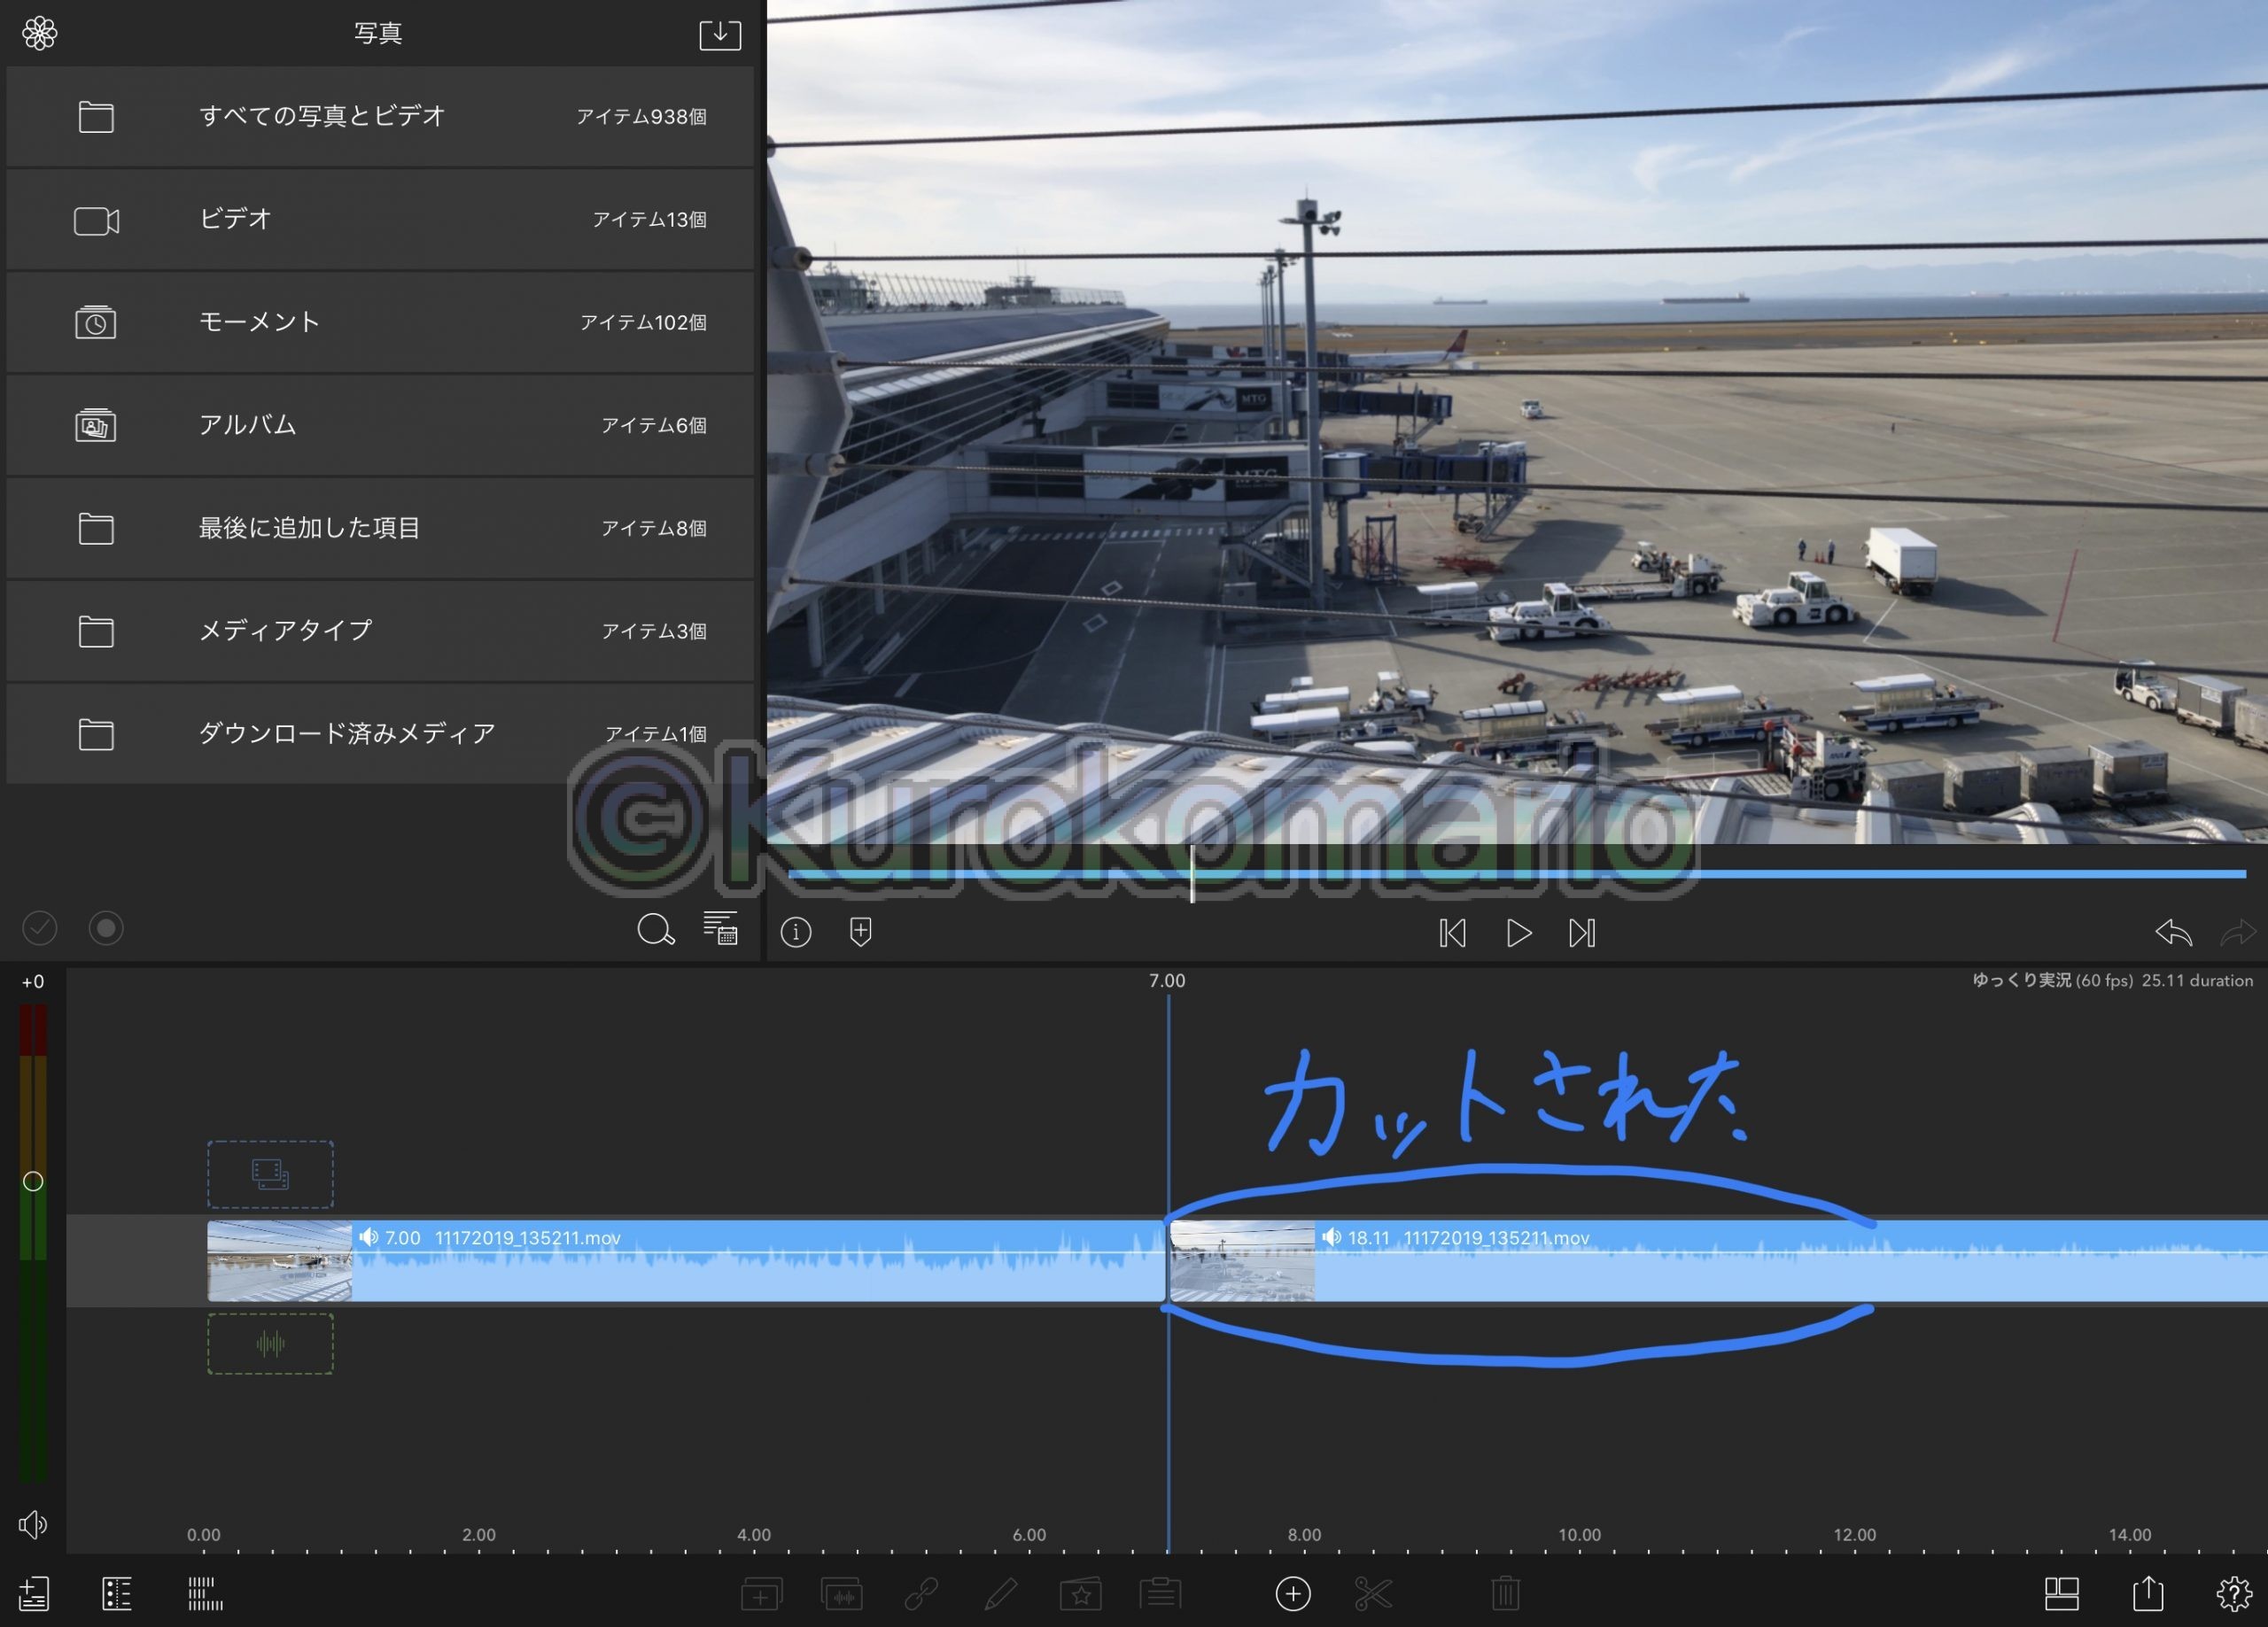 動画編集howto Ios機器だけで 高度 な ゆっくりボイス 動画を作る方法 ゆっくりボイス挿入 テロップ編 Kurokomarioの日記